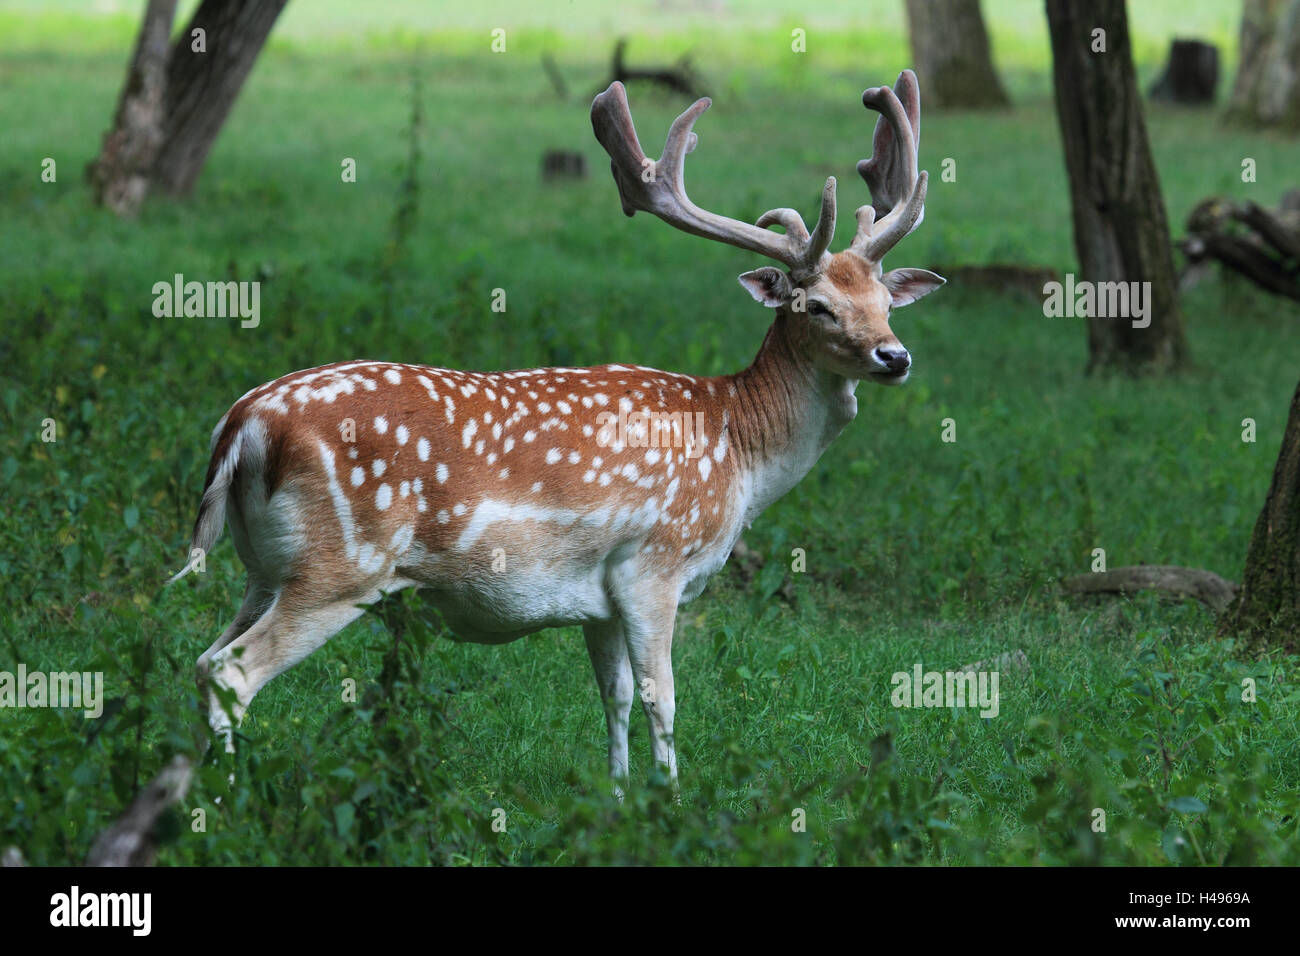 Fallow buck, little man, side view, Damwild, portrait, landscape format, deer, Germany, mammal, animal, antlers, deer antlers, fur, mottled, Stock Photo